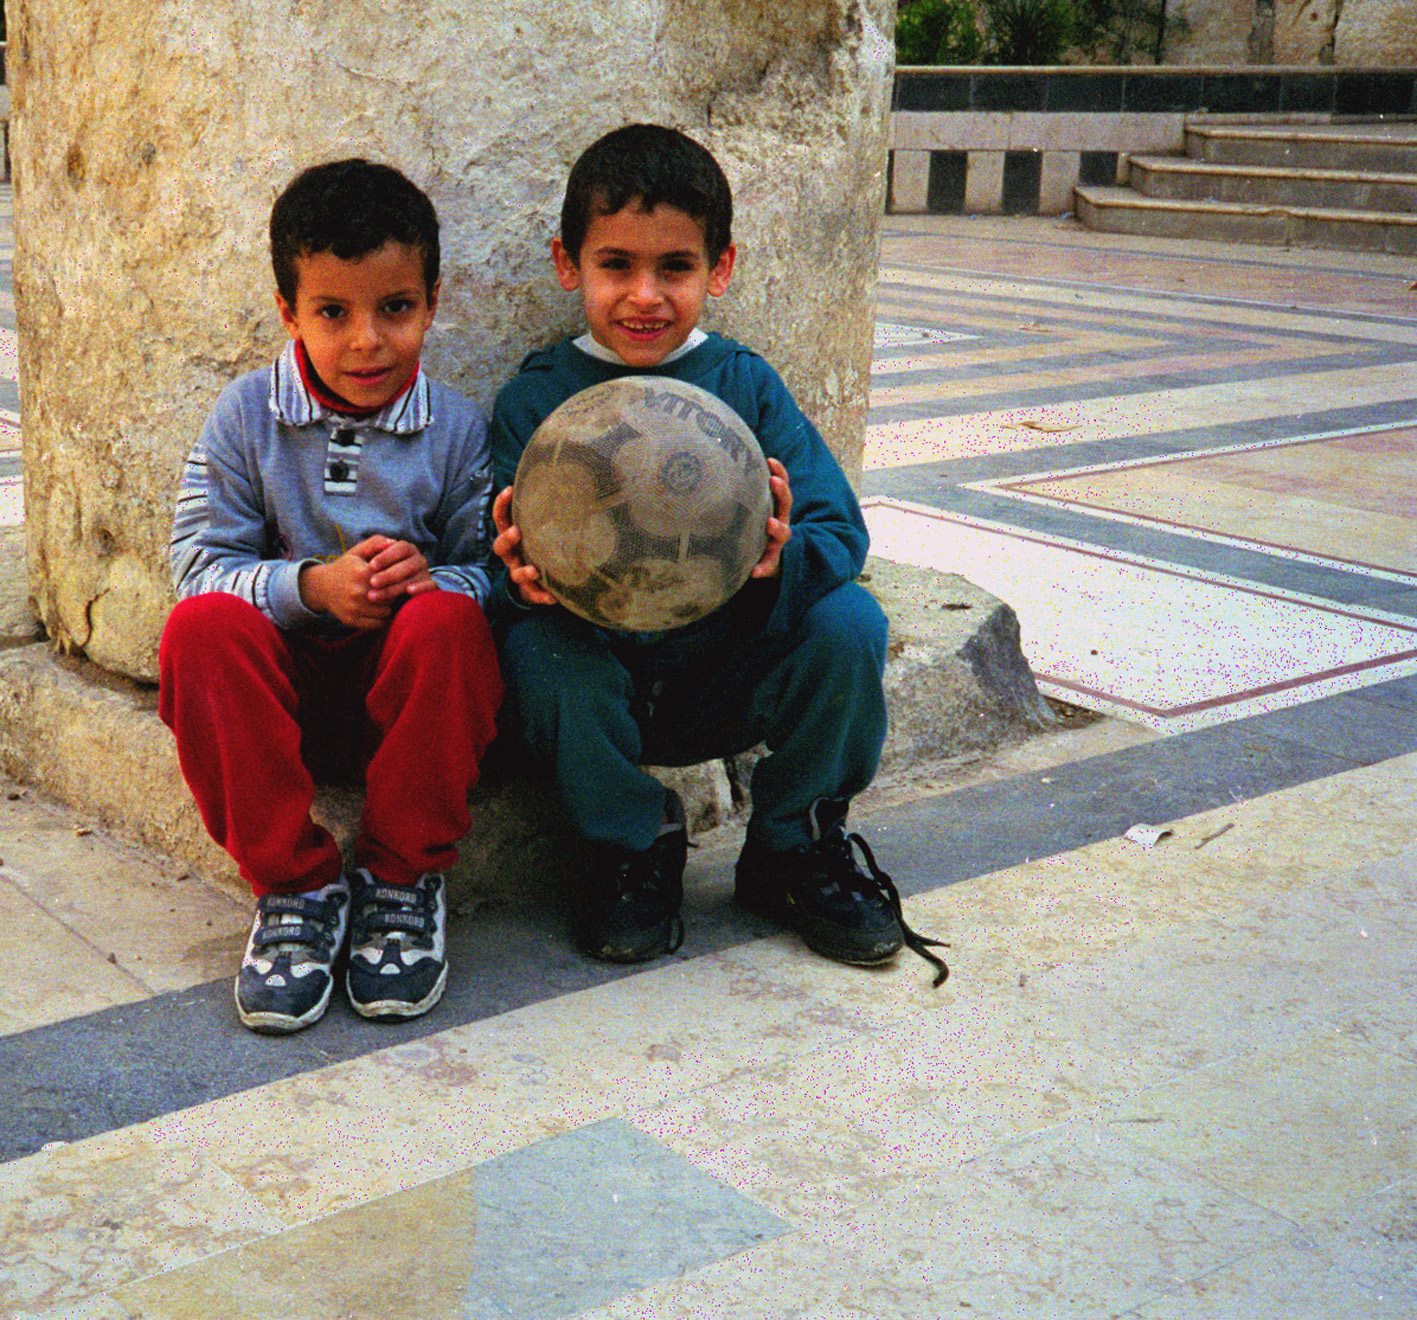 التاريخ السوري المعاصر - طفلان وكرة قدم في ساحة ضريح صلاح الدين الأيوبي في دمشق 2000